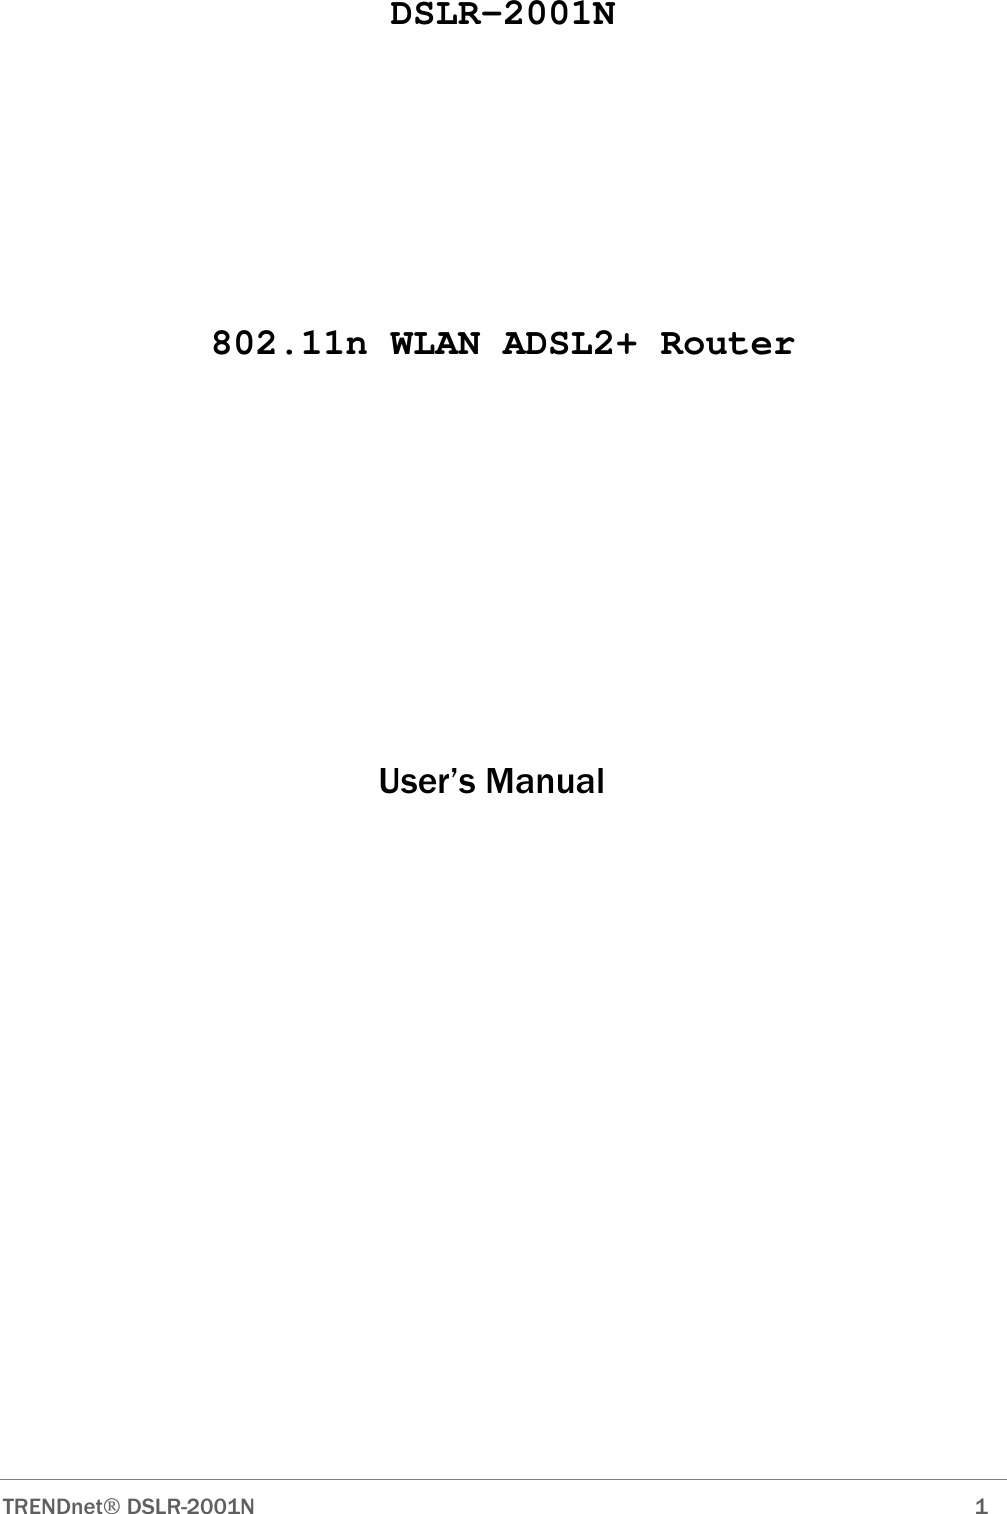  TRENDnet DSLR-2001N        1 DSLR-2001N      802.11n WLAN ADSL2+ Router                                                User’s Manual                